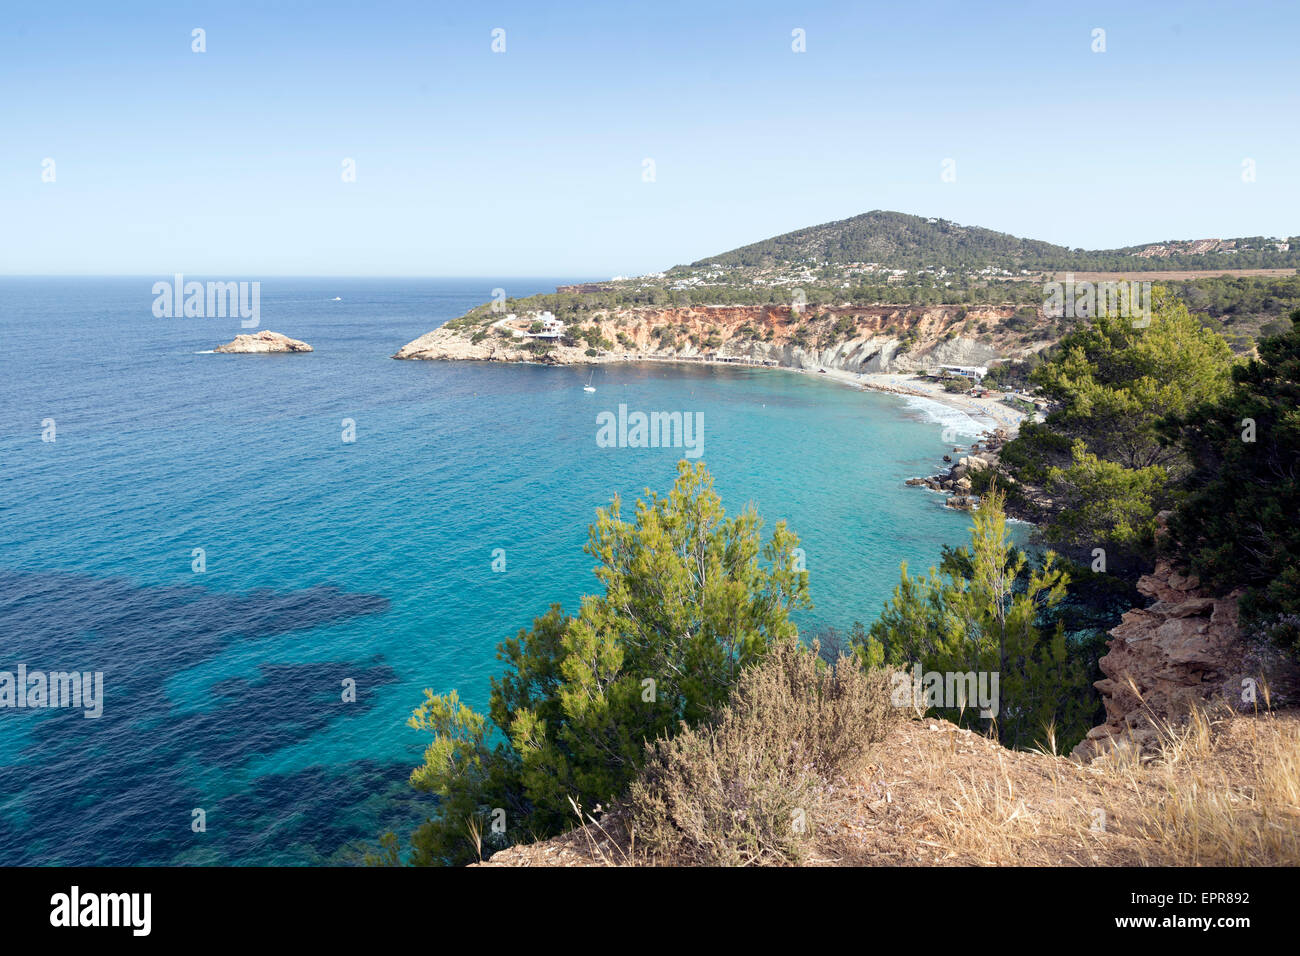 Cala d'Hort, Ibiza island, Spain Stock Photo